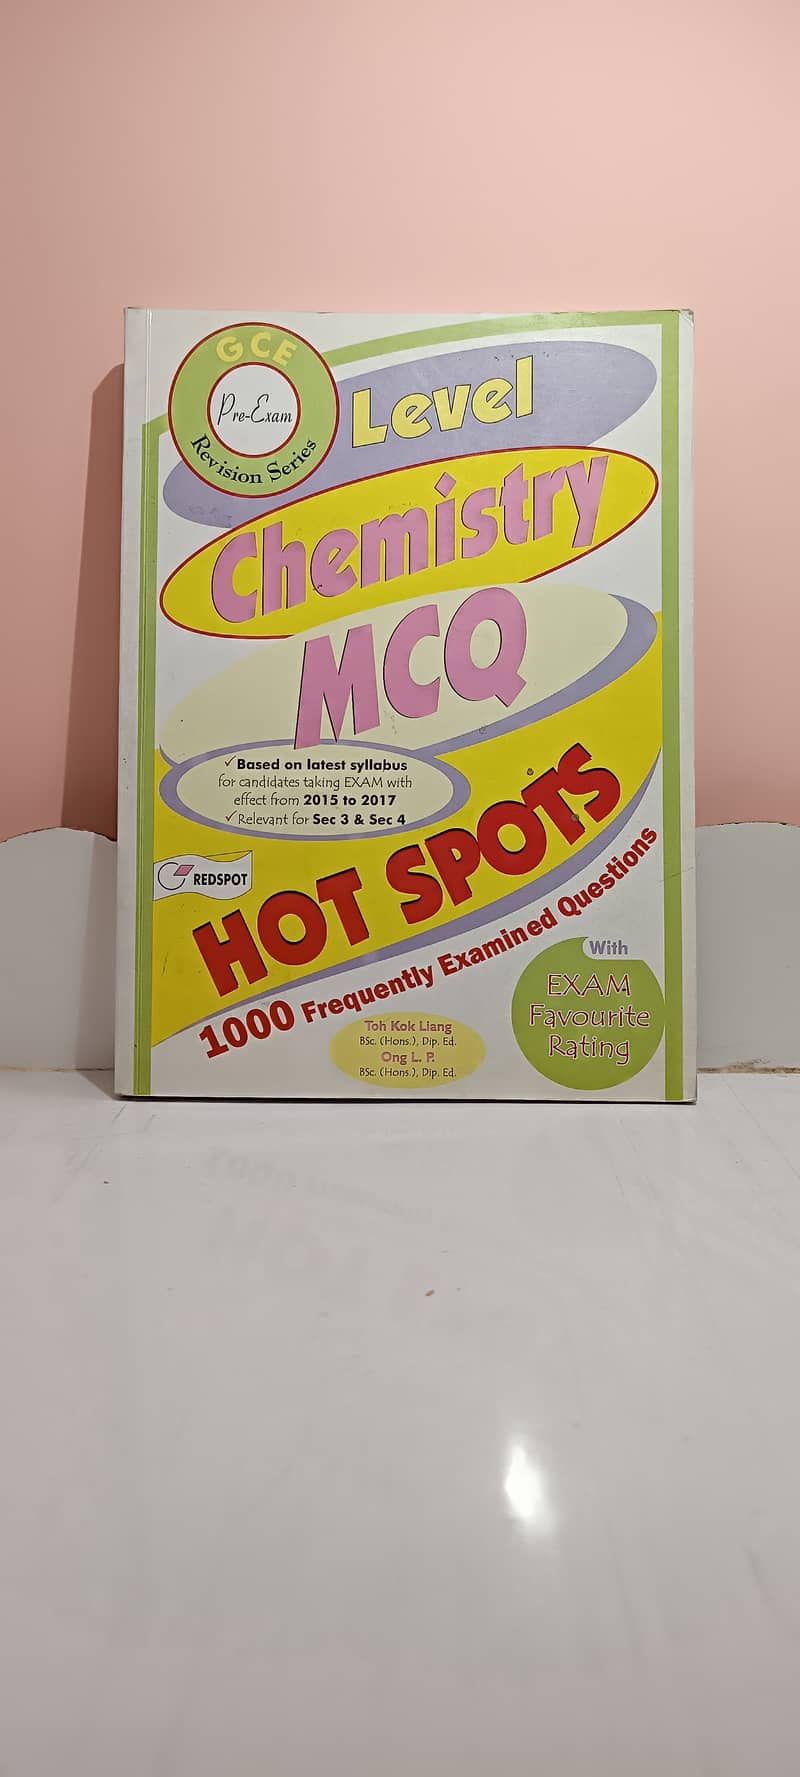 Olevel/GCE Chemistry MCQ Hot Spots Redspot 0